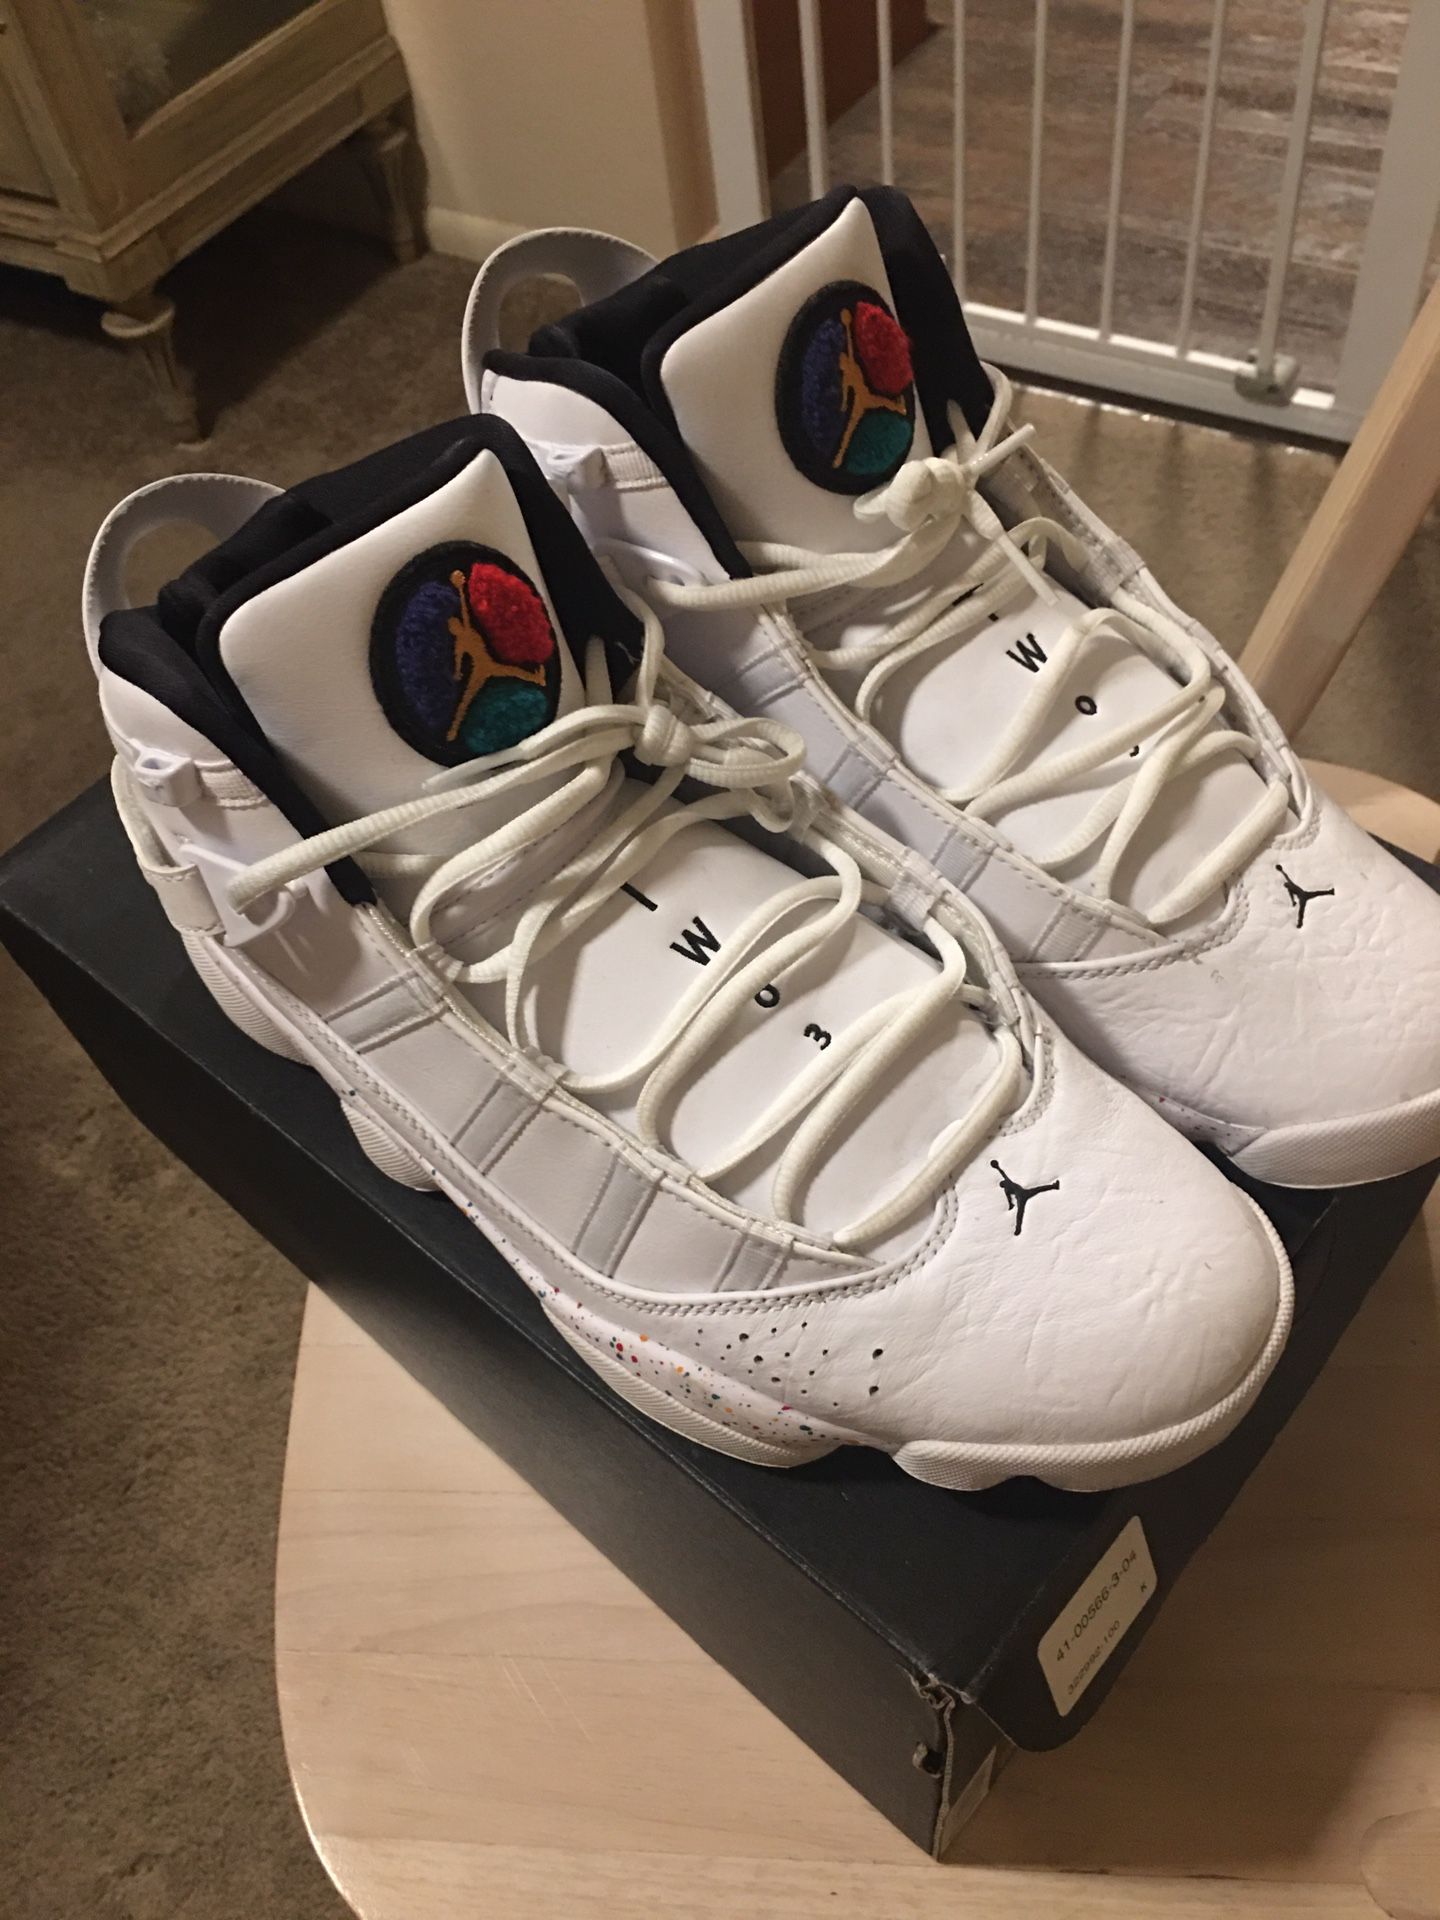 Michael Jordan 6 Rings Size 10 1/2Paint Splatter Air Jordans White